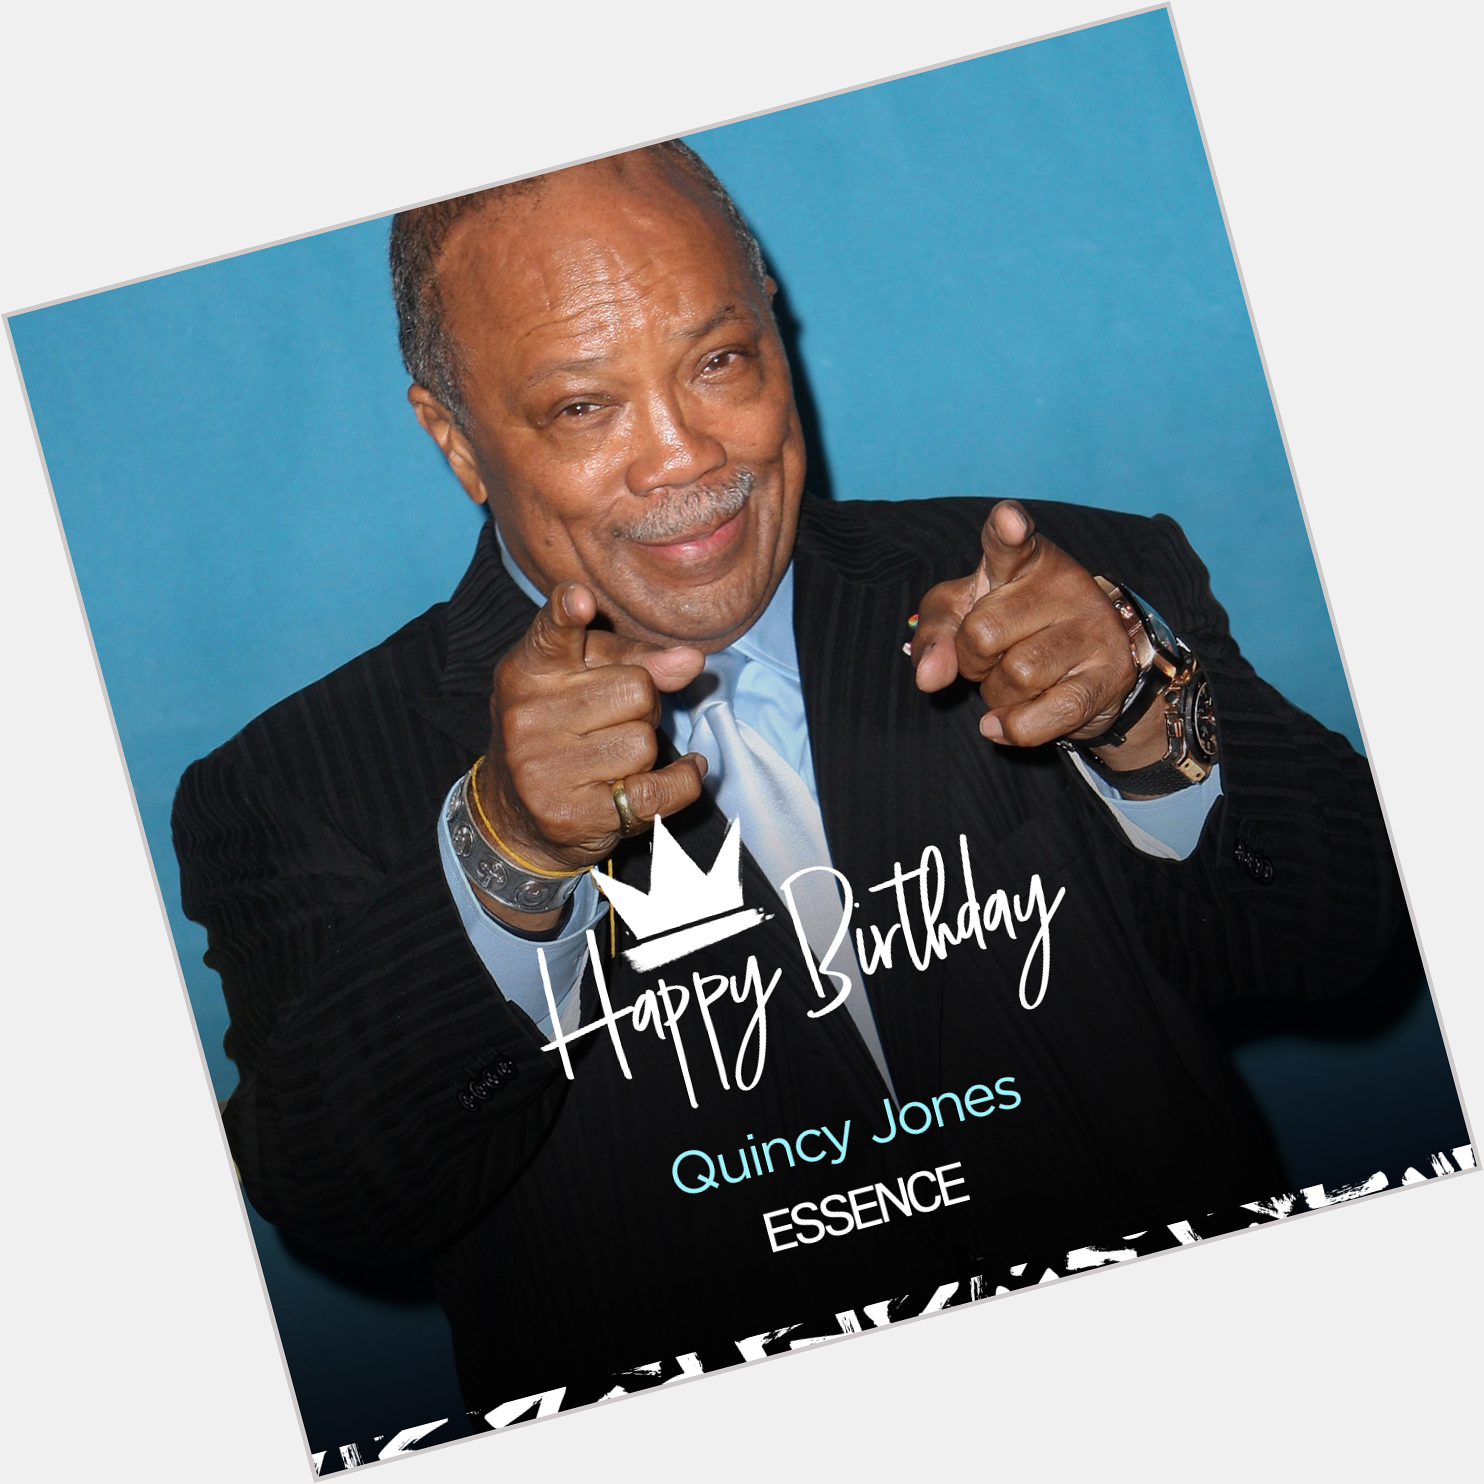 Happy 87th birthday to Quincy Jones. 